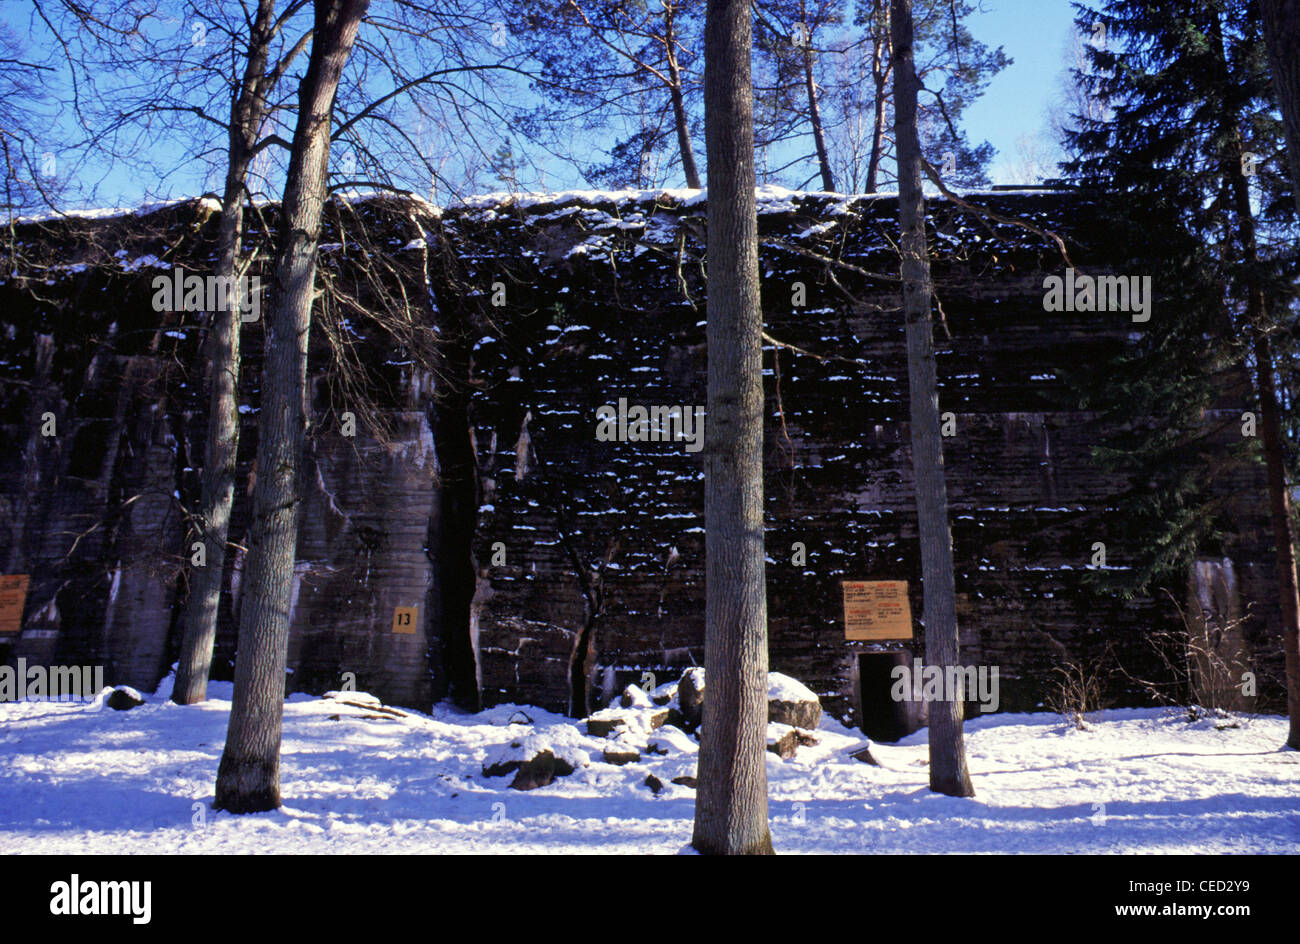 Der Schnee bedeckt Hitlers Wolfsschanze-Bunker Wolfsschanze oder Wolfsschanze, das erste Militärhauptquartier der Ostfront von Adolf Hitler im Zweiten Weltkrieg war, in der Nähe des kleinen Dorfes Gorlitz östlich der kleinen ostpreußischen Stadt Rastenburg, jetzt Ketrzyn, im heutigen Polen. Stockfoto